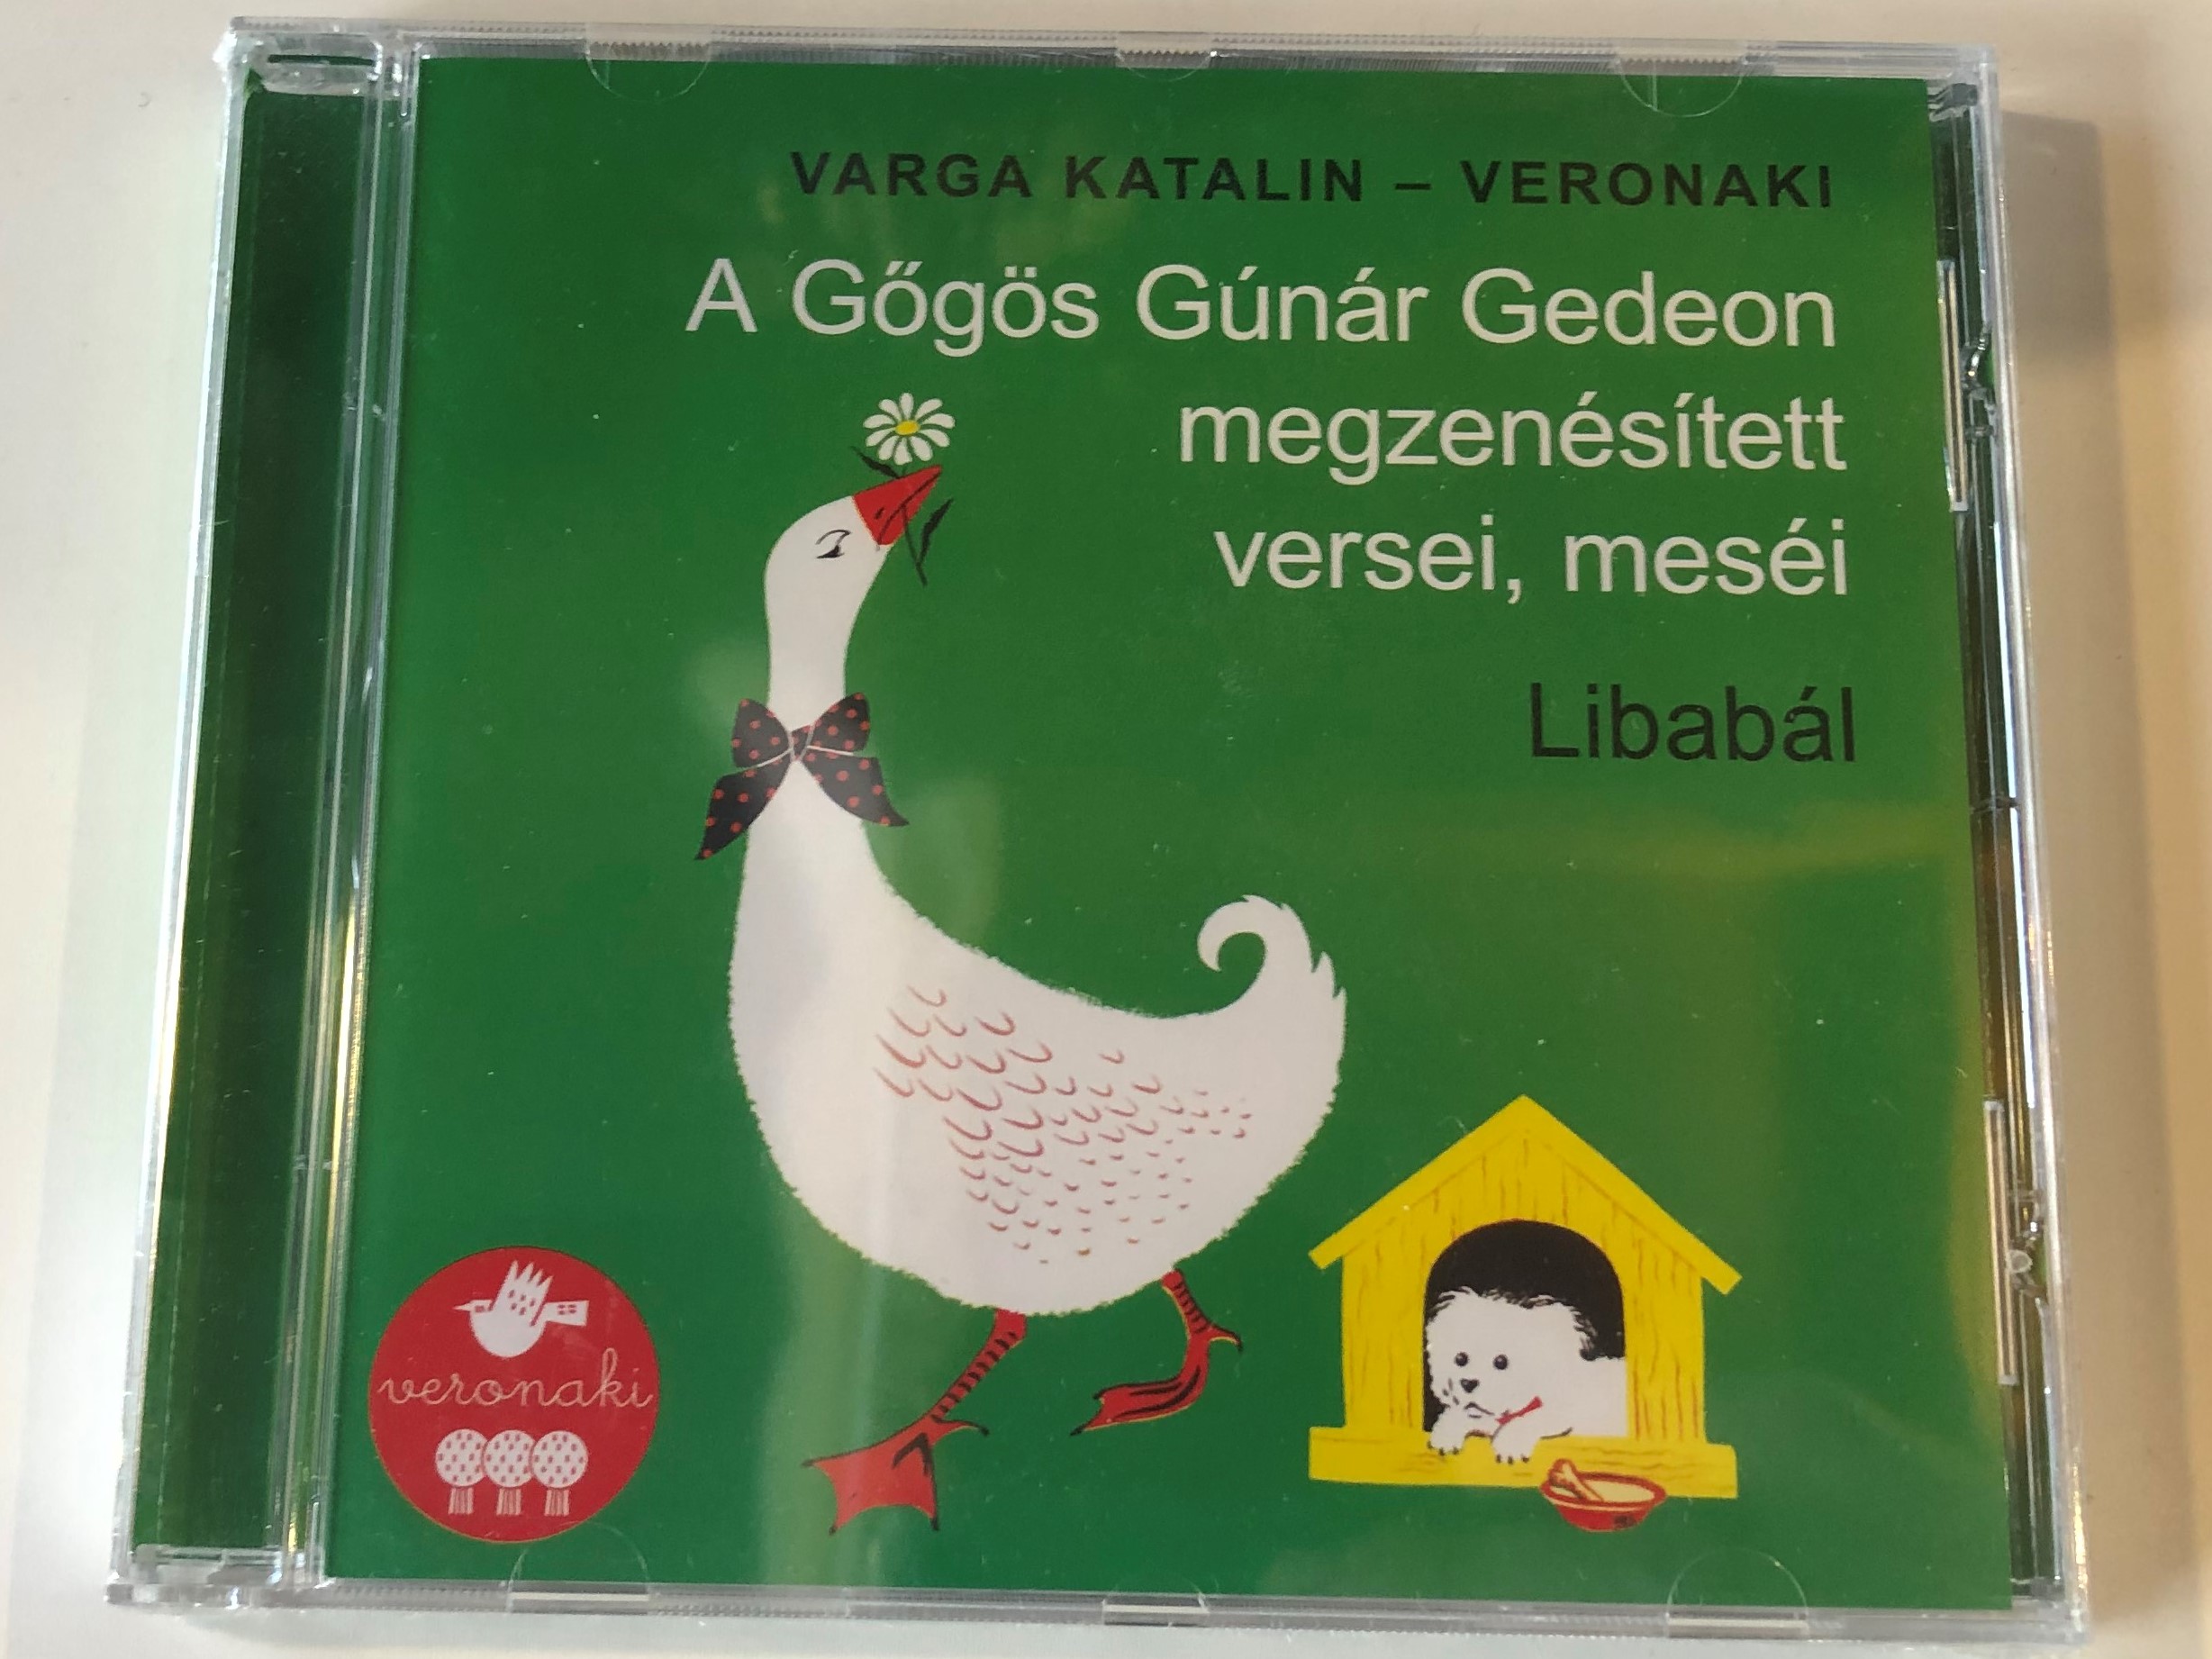 varga-katalin-veronaki-libab-l-a-g-g-s-g-n-r-gedeon-megzen-s-tett-versei-mes-i-universal-music-audio-cd-2019-7764868-1-.jpg